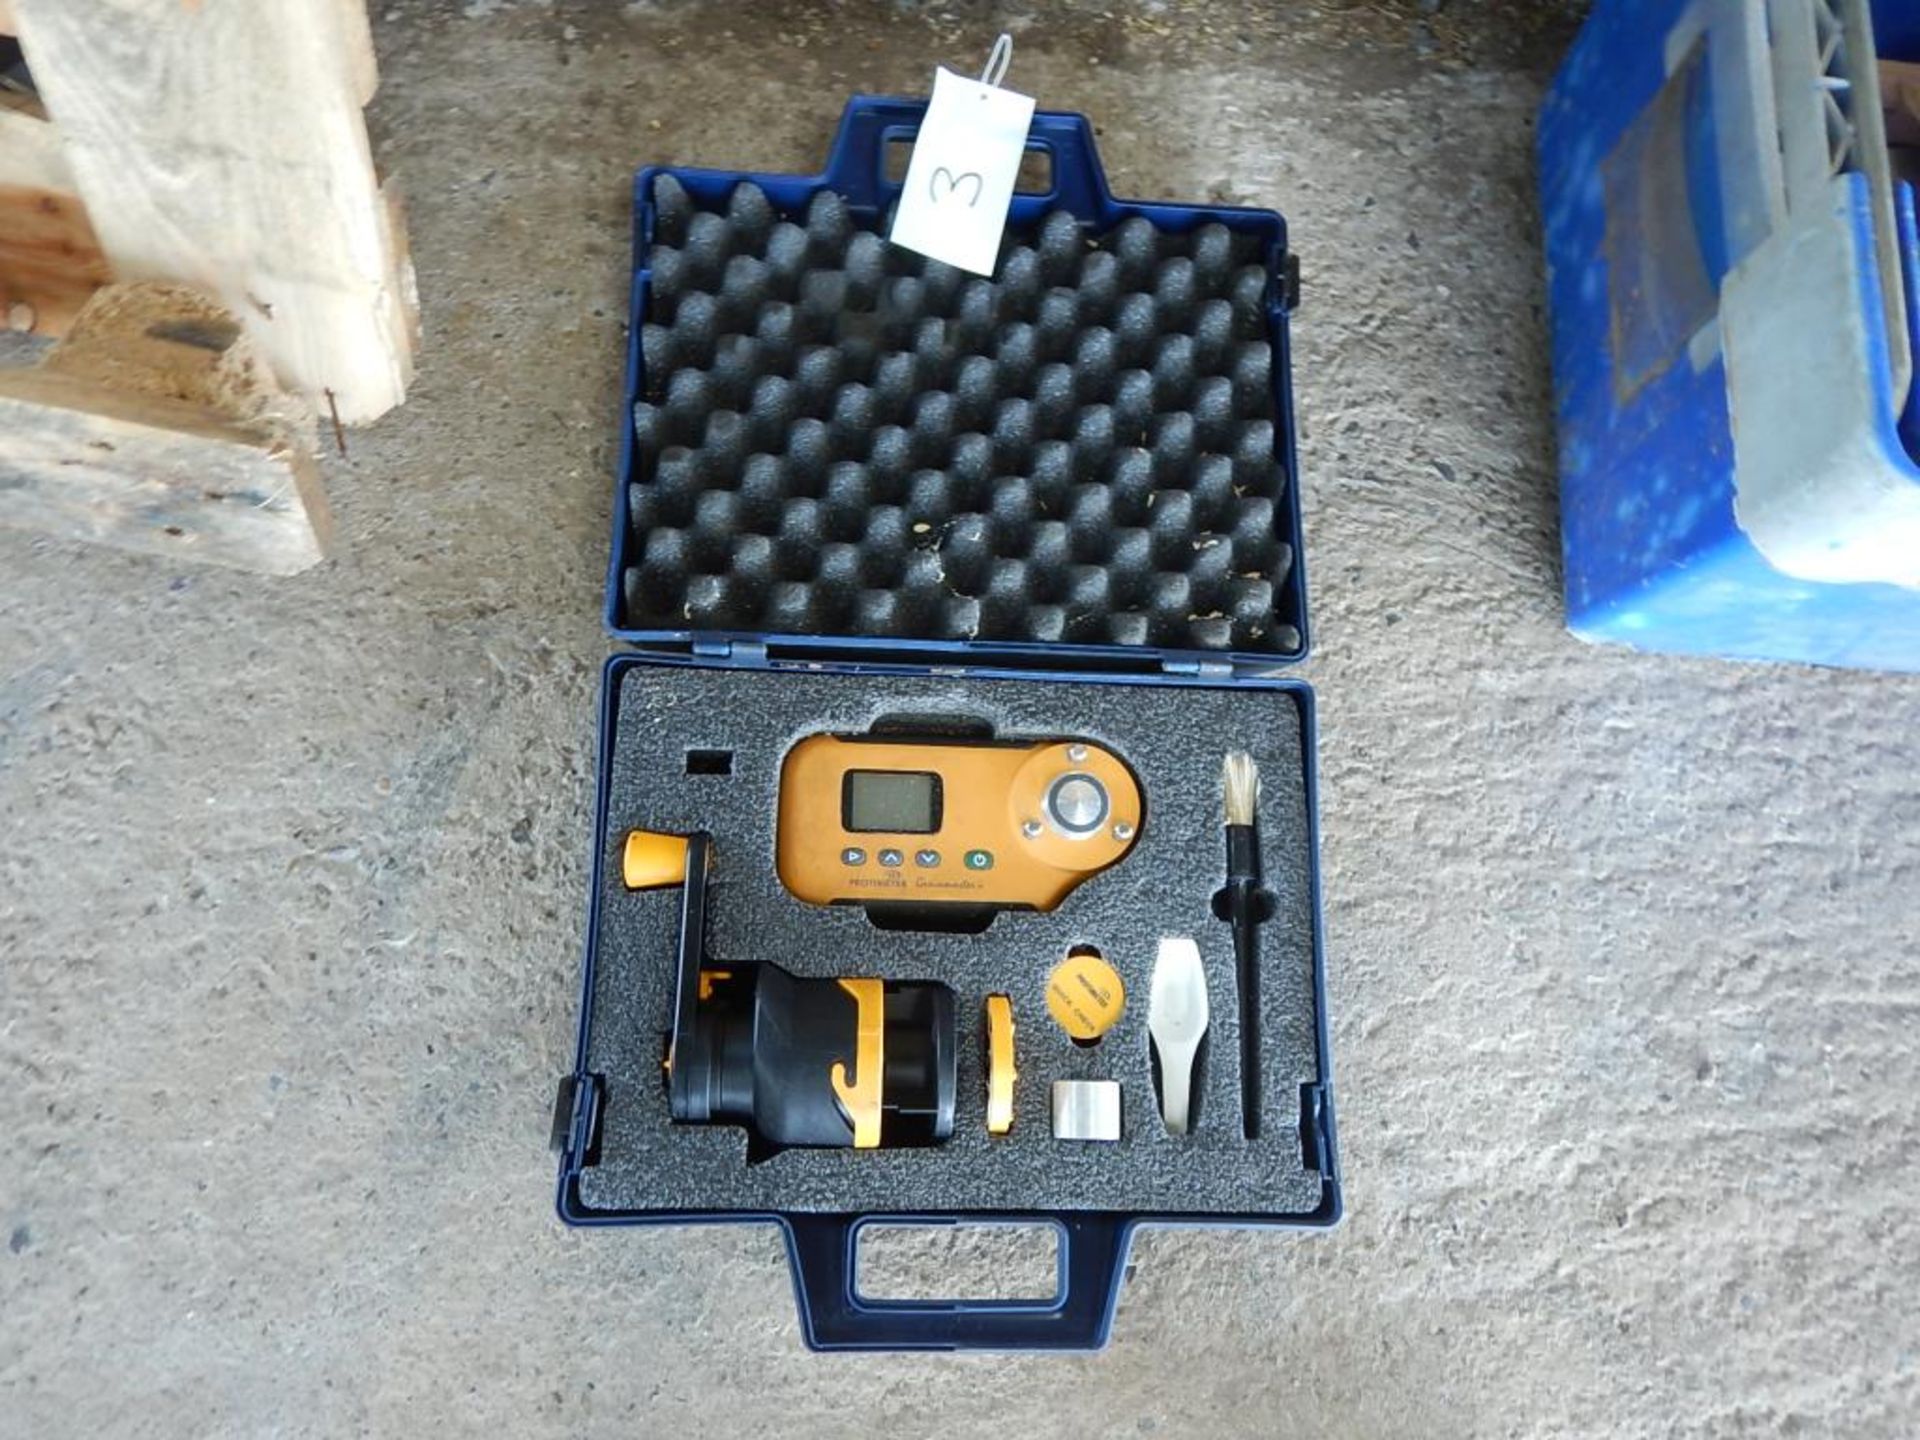 Protimeter Grainmaster moisture meter, cased